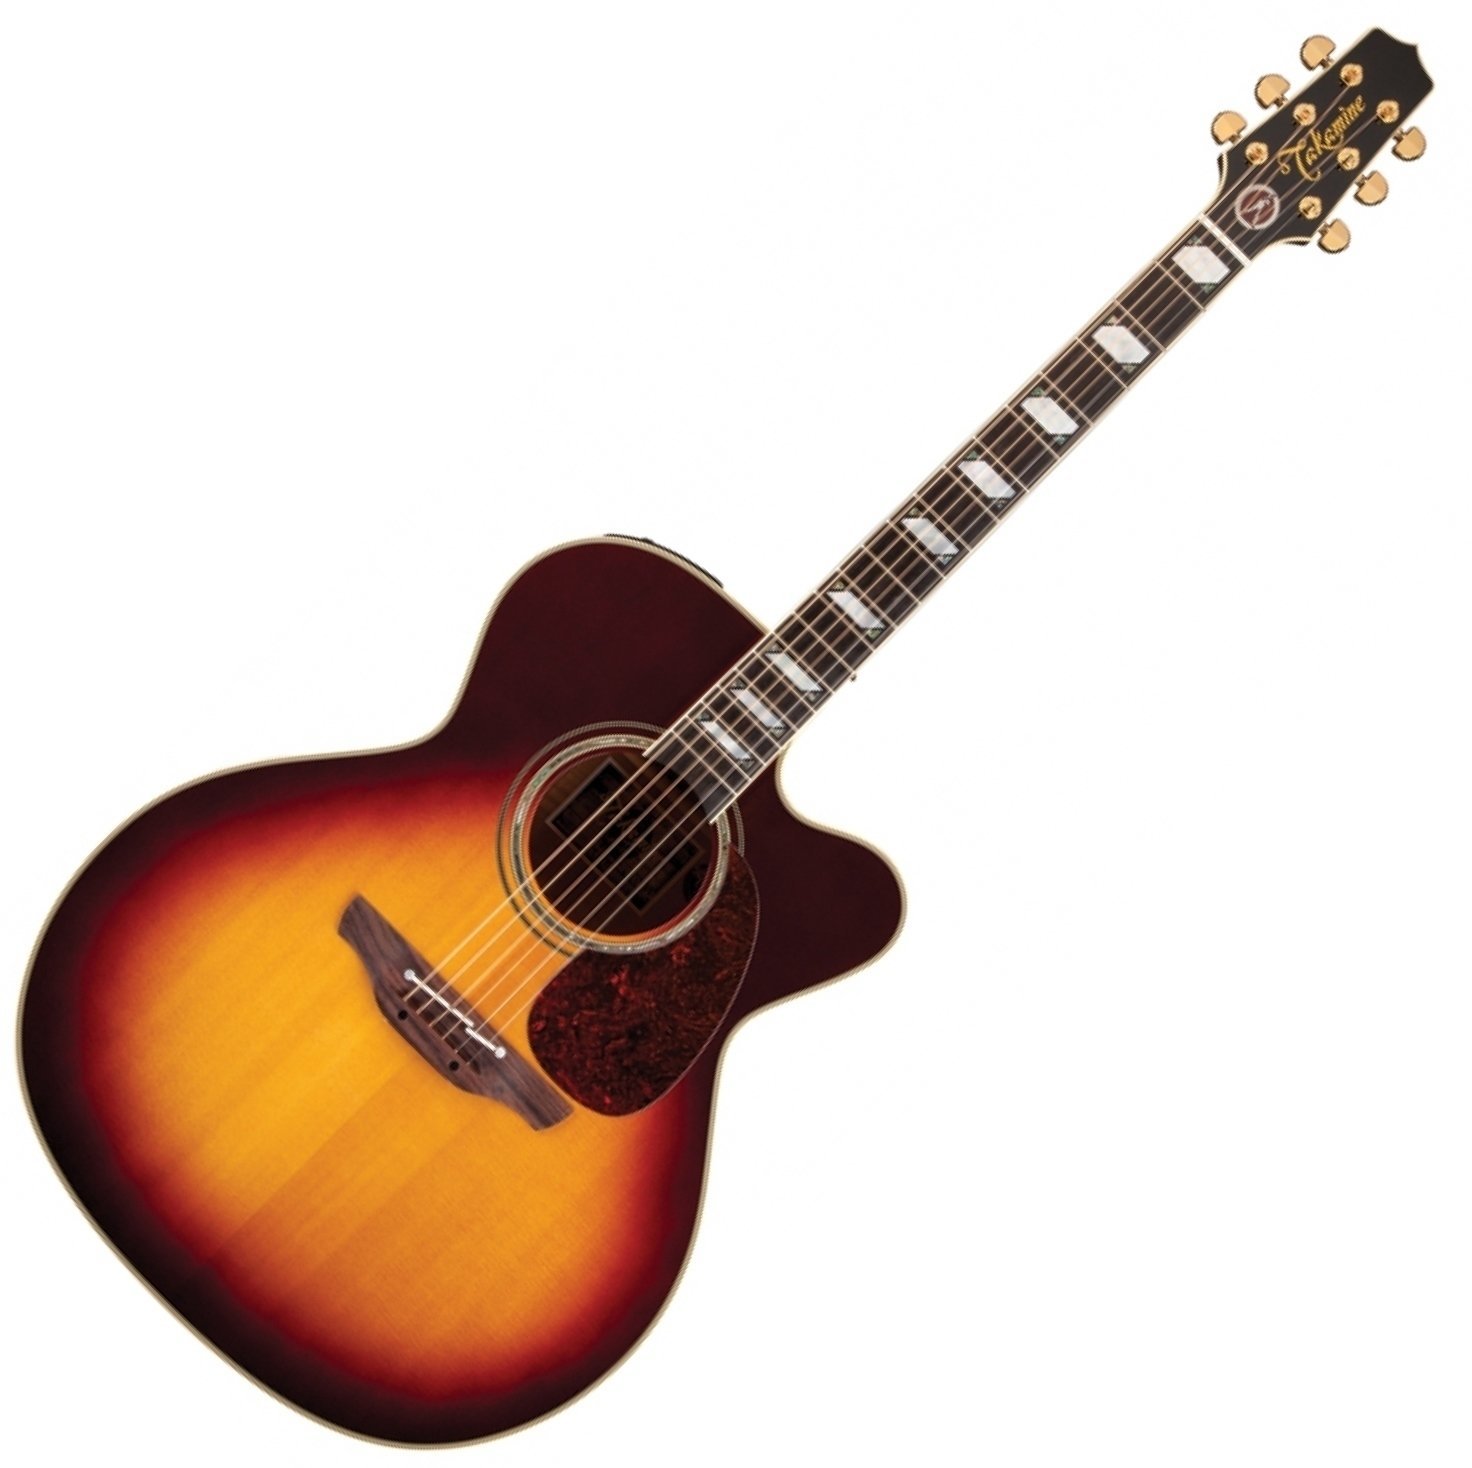 Jumbo elektro-akoestische gitaar Takamine EF250TK Toby Keith Signature Sunburst